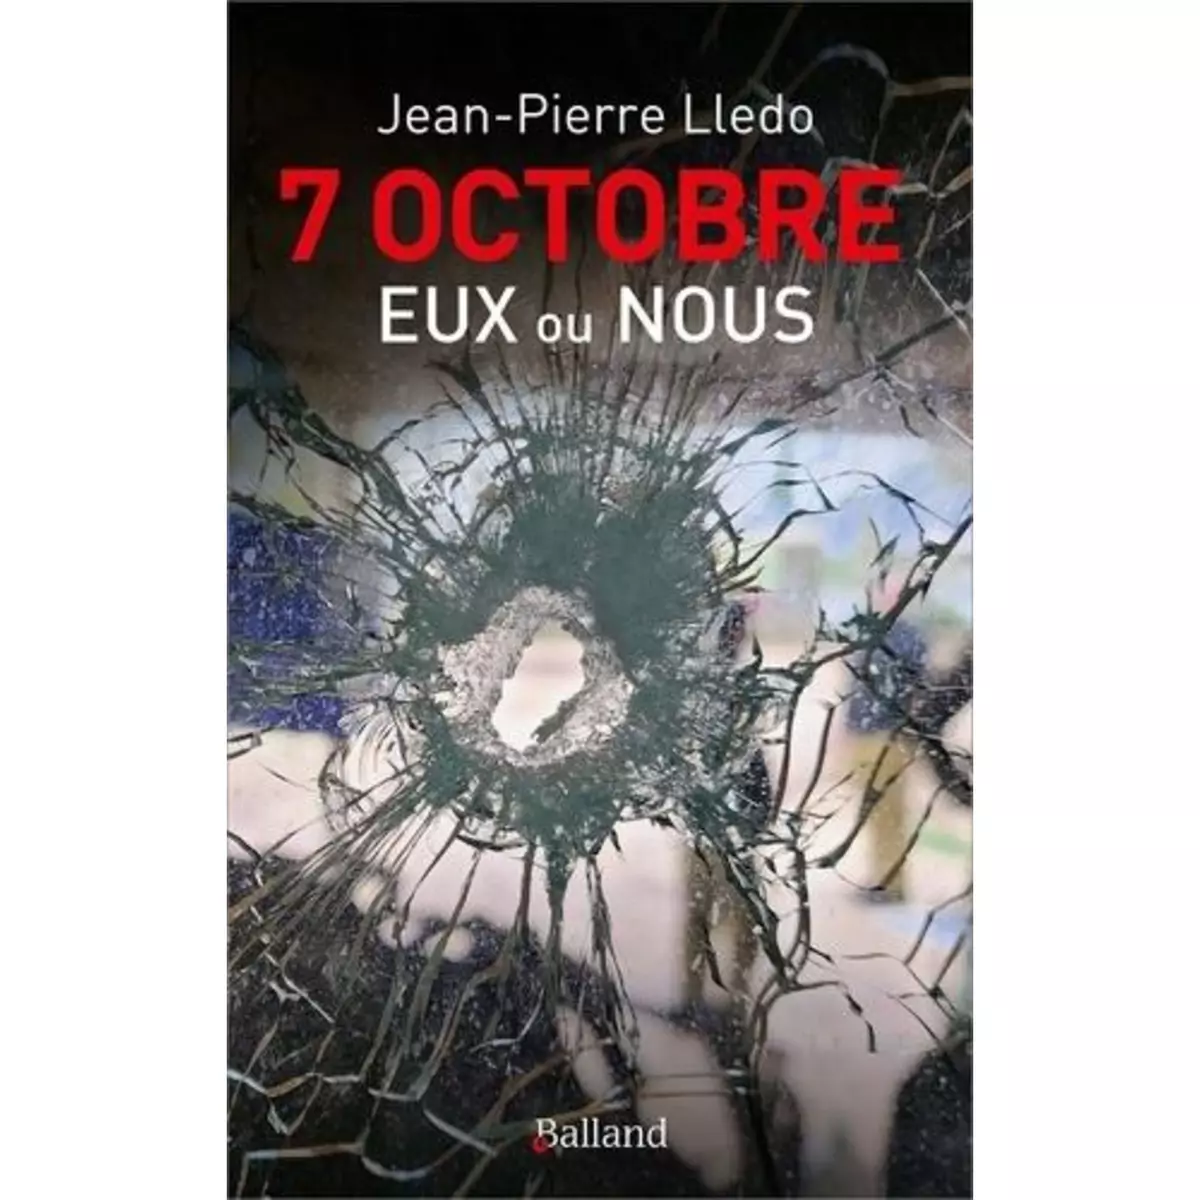  7 OCTOBRE. EUX OU NOUS, Lledo Jean-Pierre